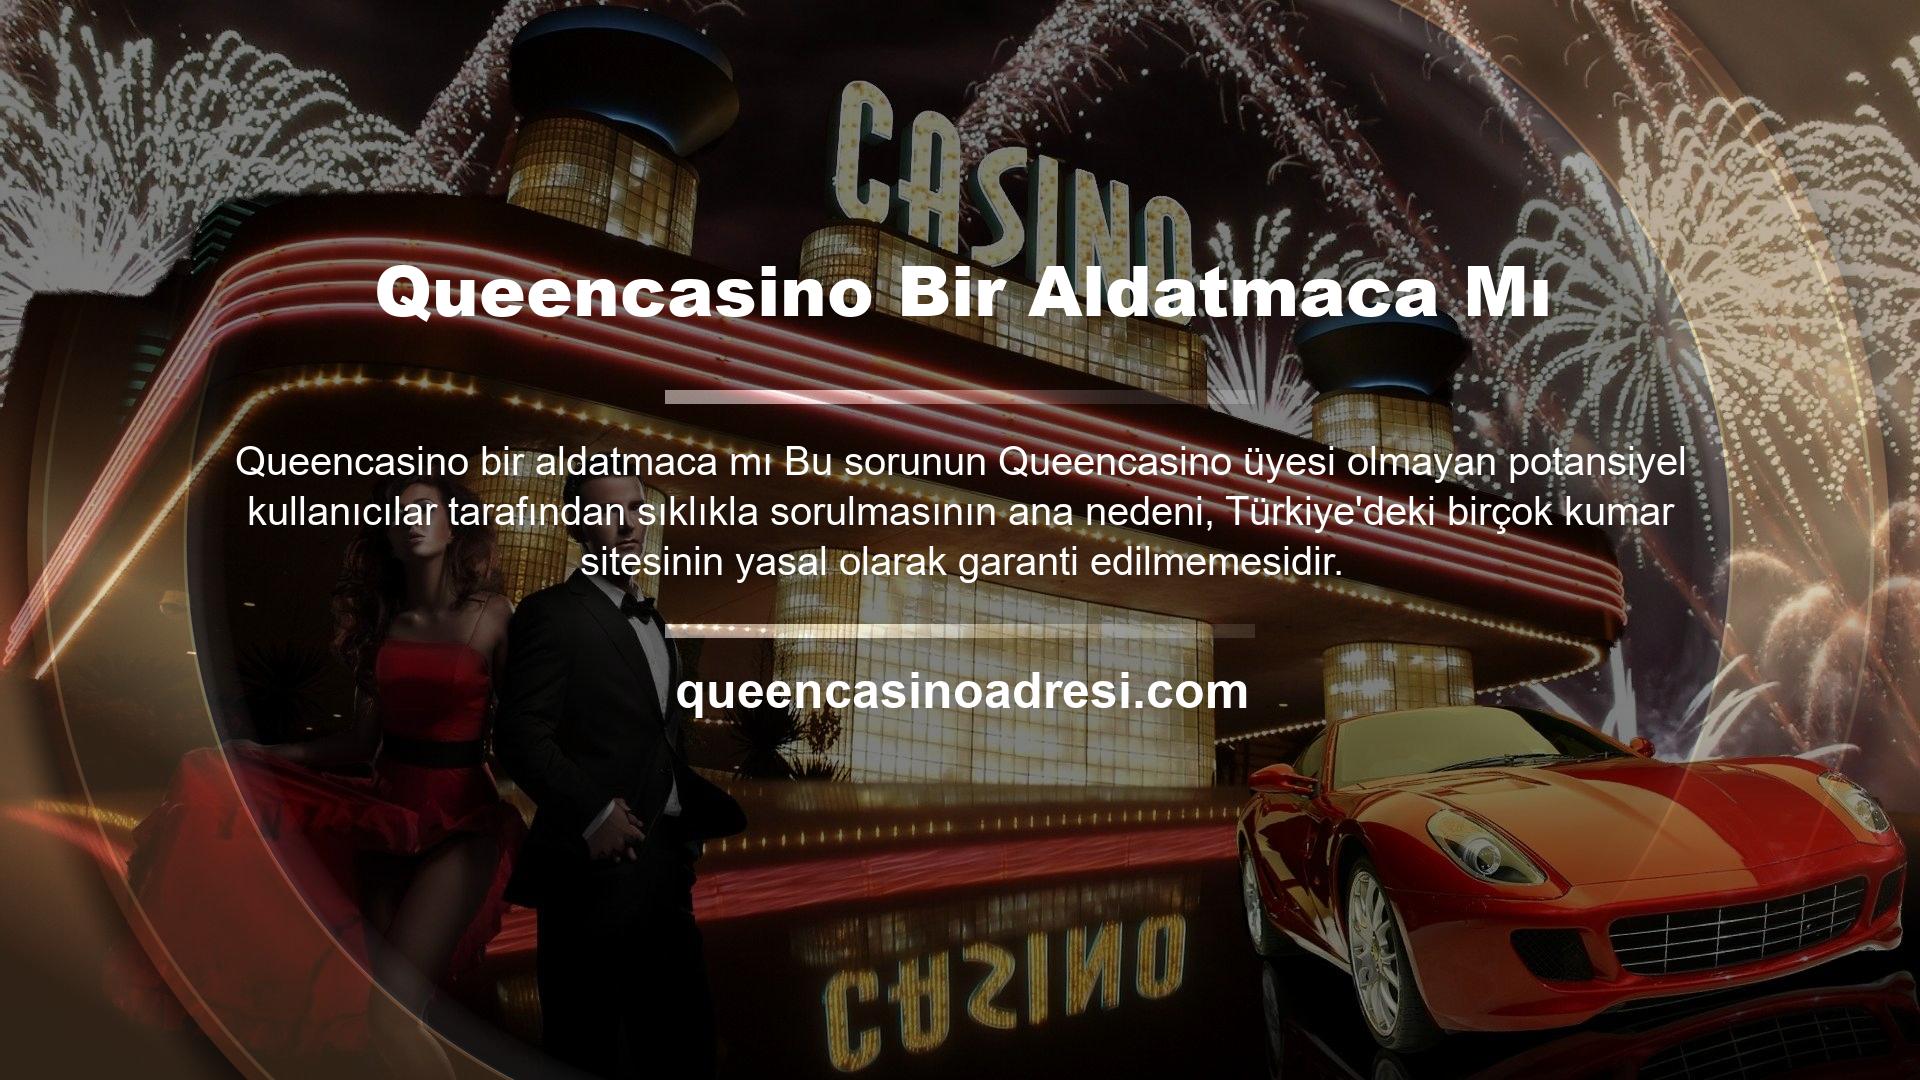 Queencasino web sitesi, yasal olarak garantili birkaç kumar, kumarhane ve slot makinesi sitesinden biridir